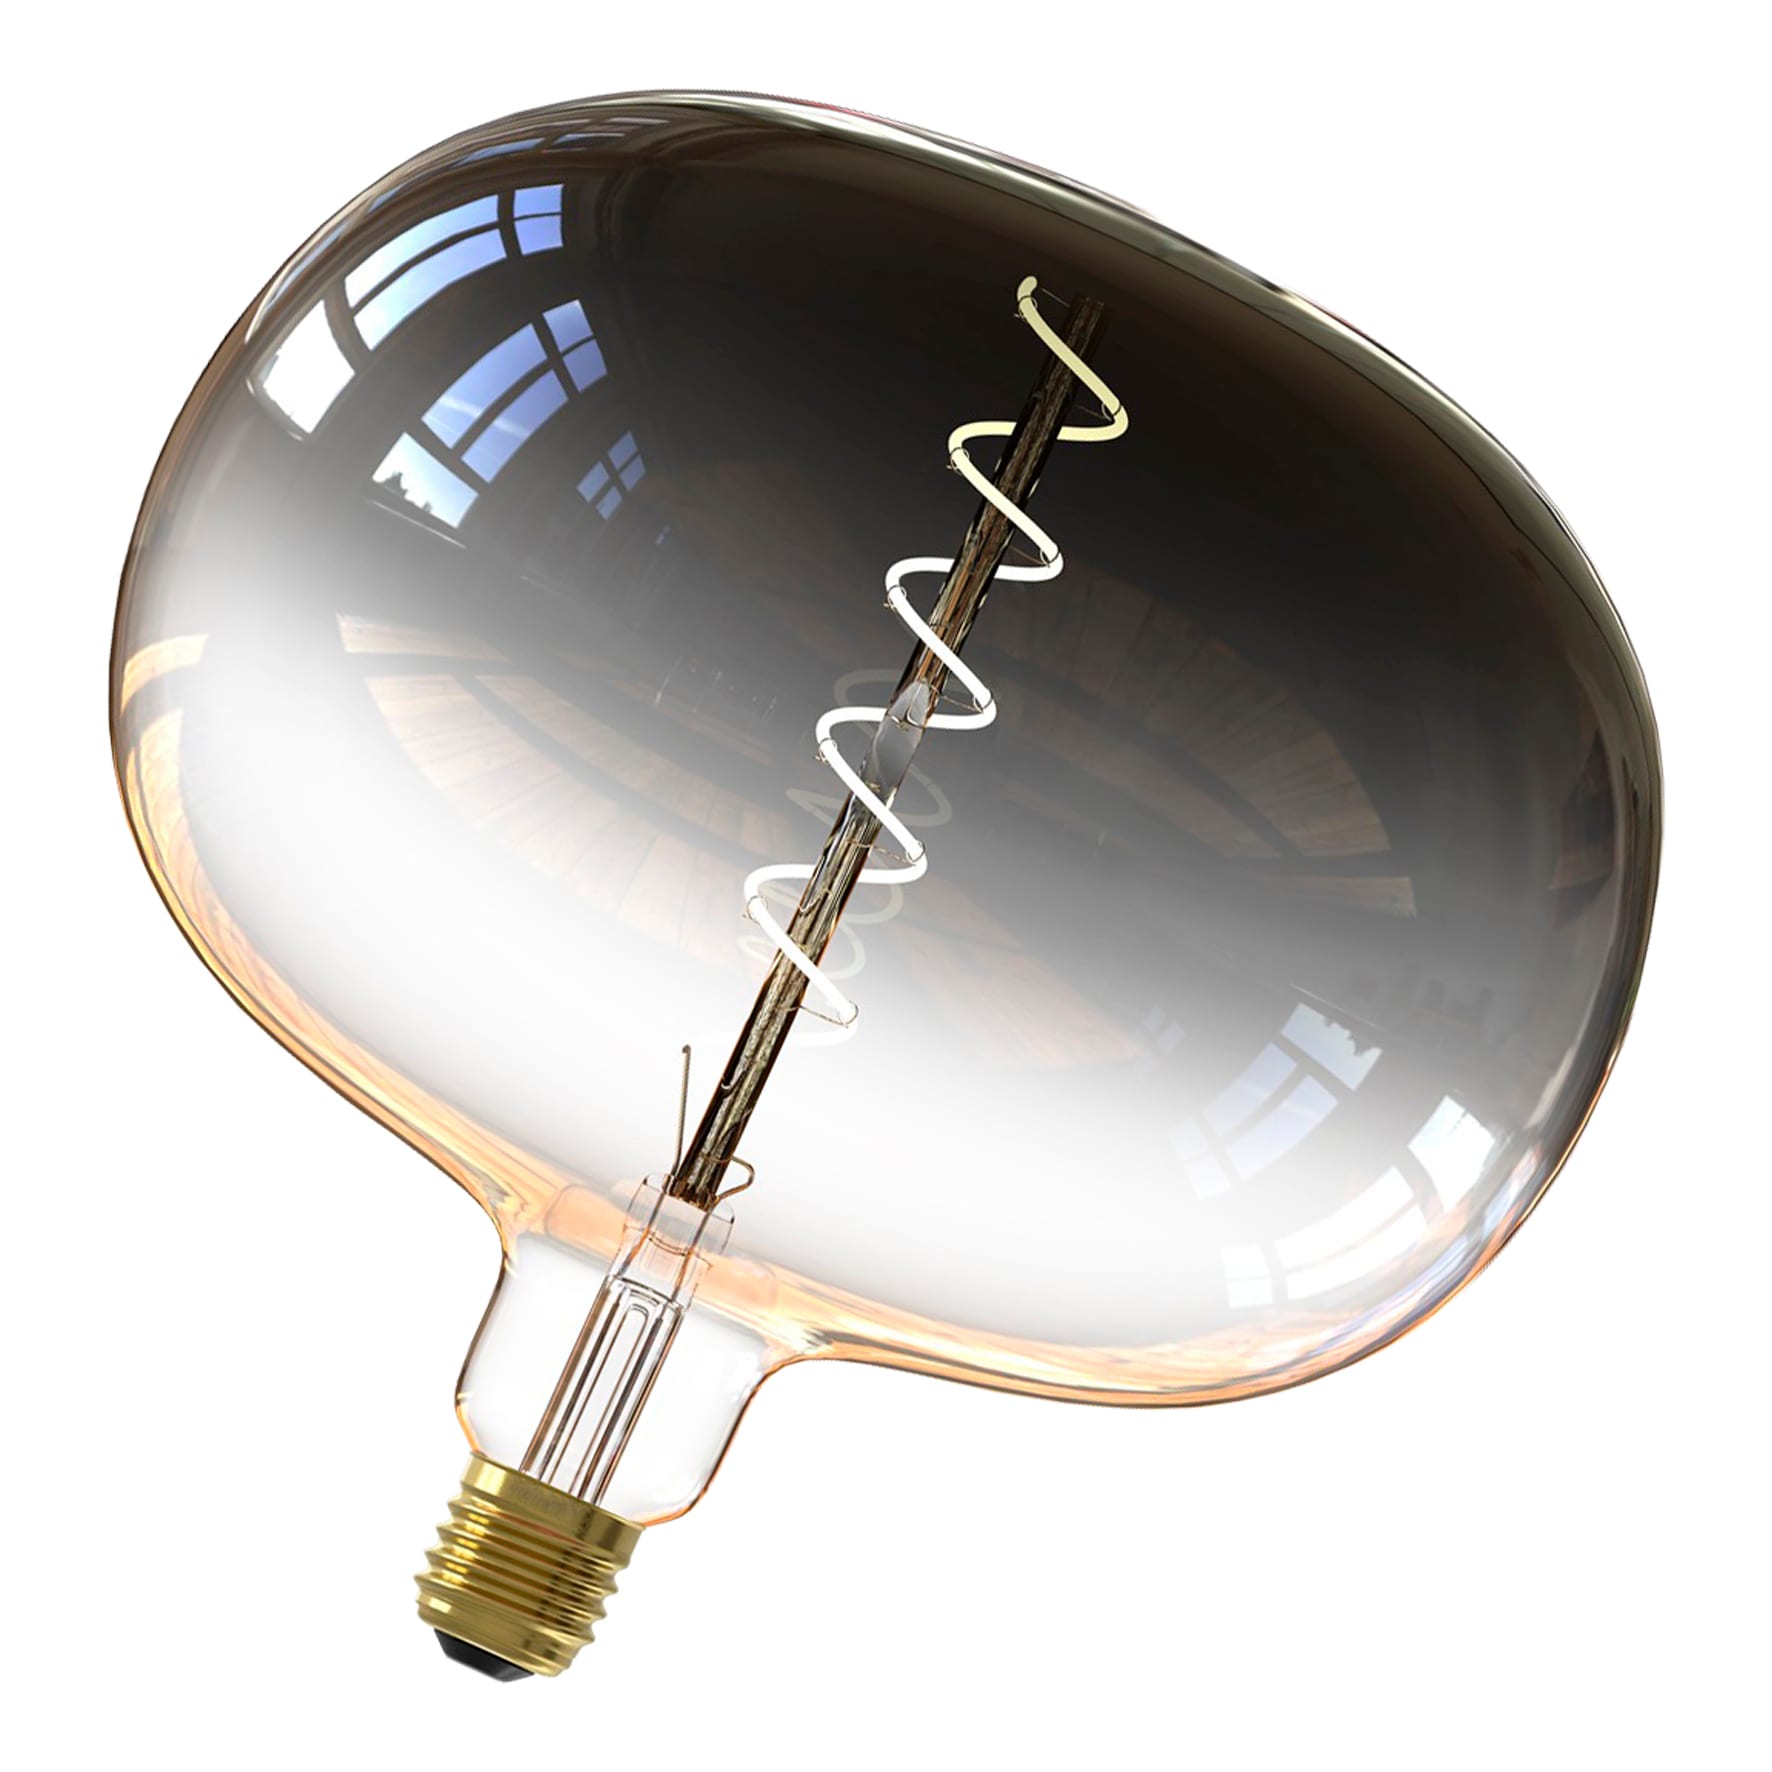 Calex Kiruna ampoule LED E27 5 W filament dim gris